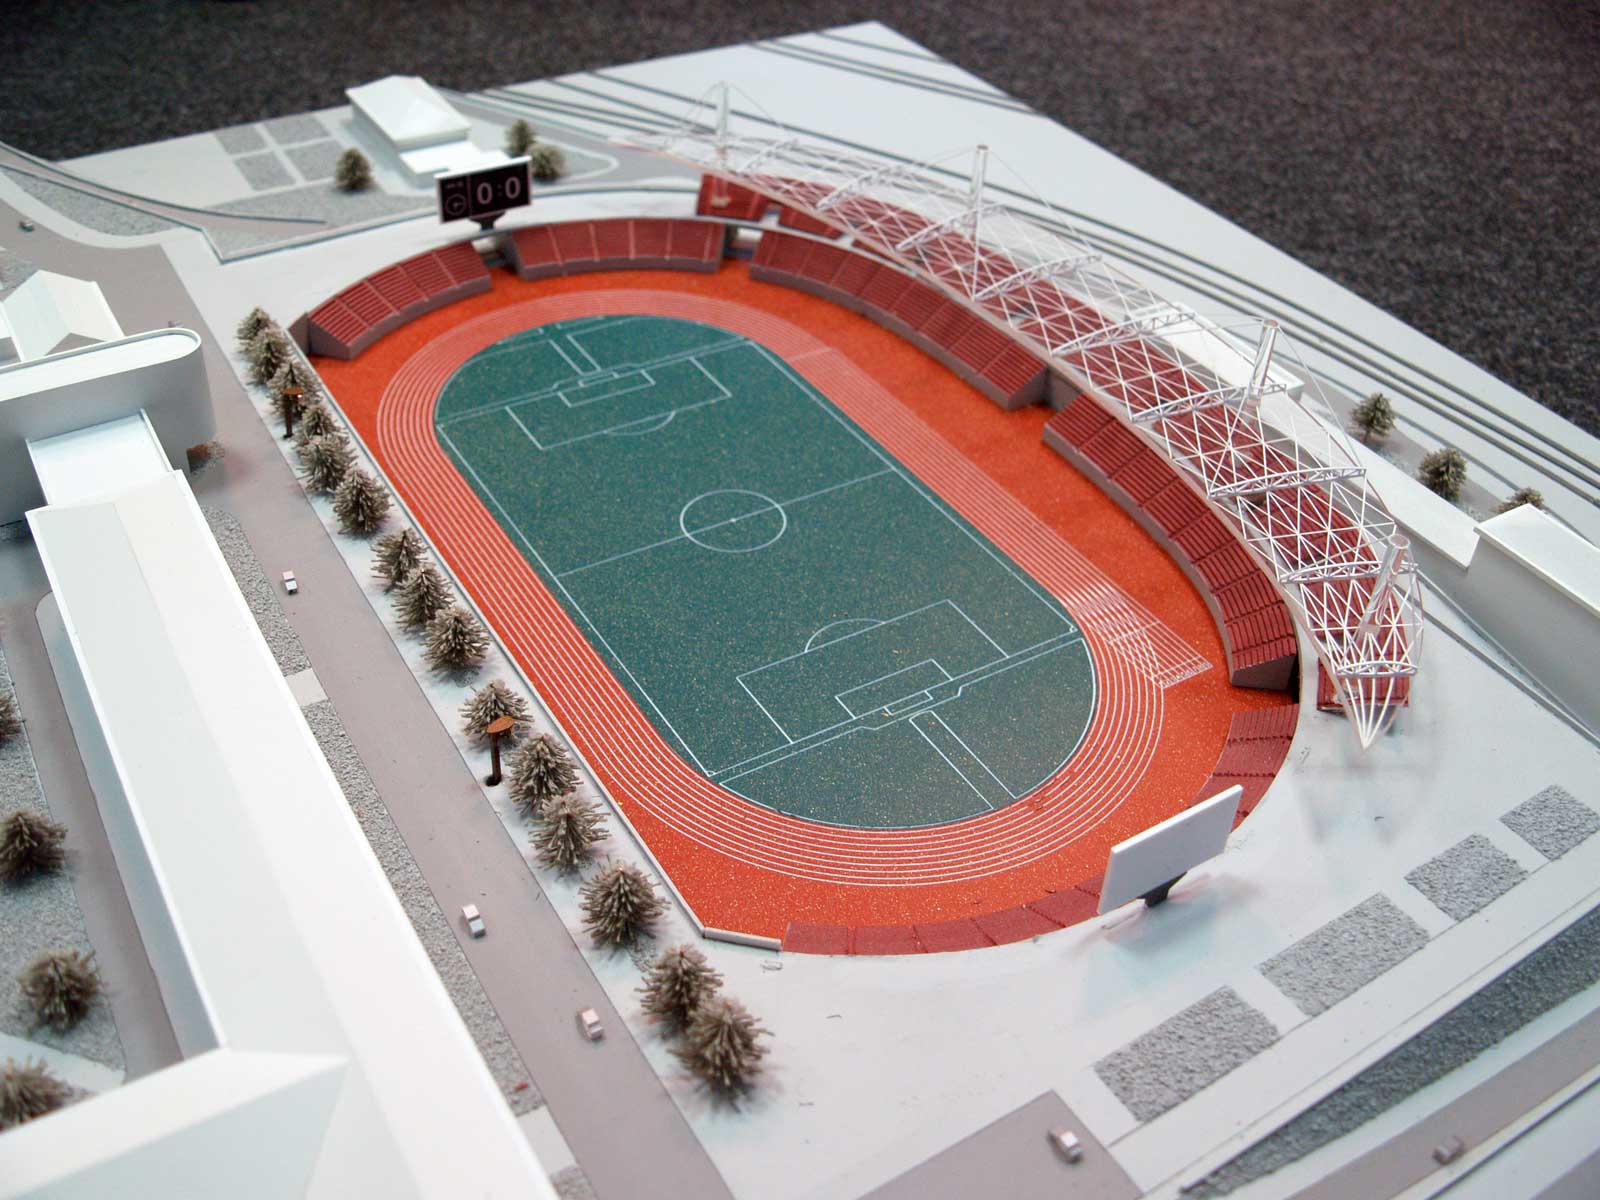 Макет реконструкции стадиона центрального спортивного клуба. На территории Министарства обороны Украины.